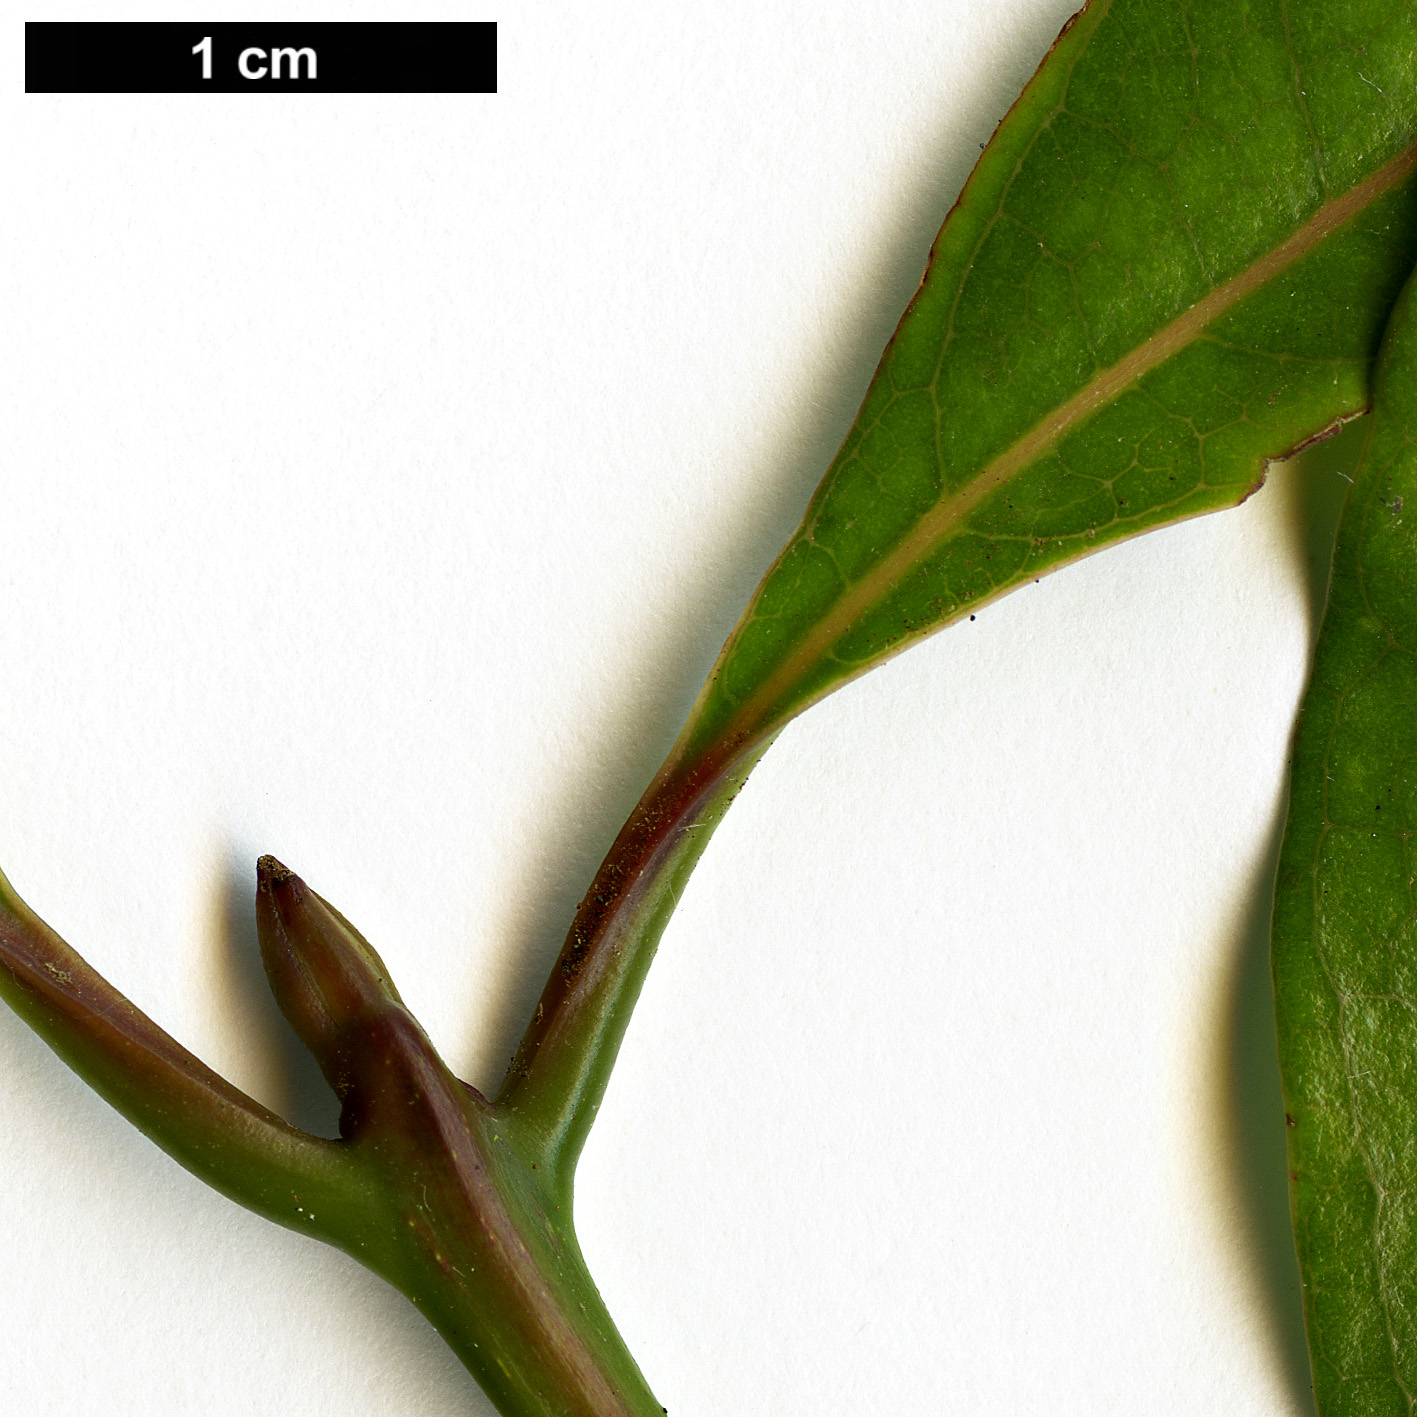 High resolution image: Family: Lauraceae - Genus: Beilschmiedia - Taxon: erythrophloia